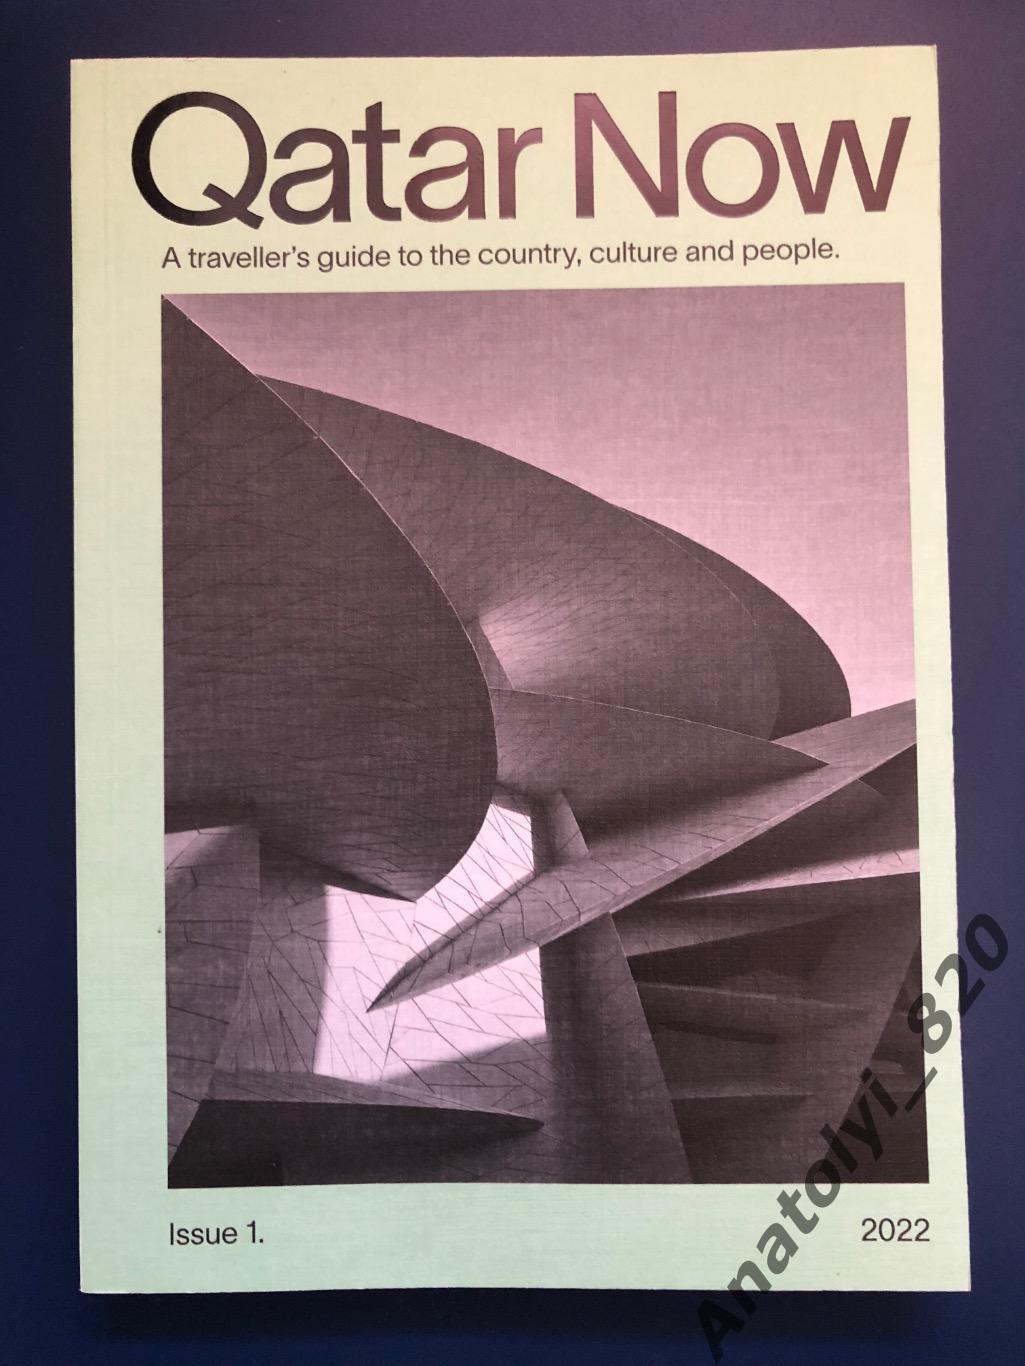 Катар сейчас 2022 год, путеводитель путешественника по стране, культуре и людям